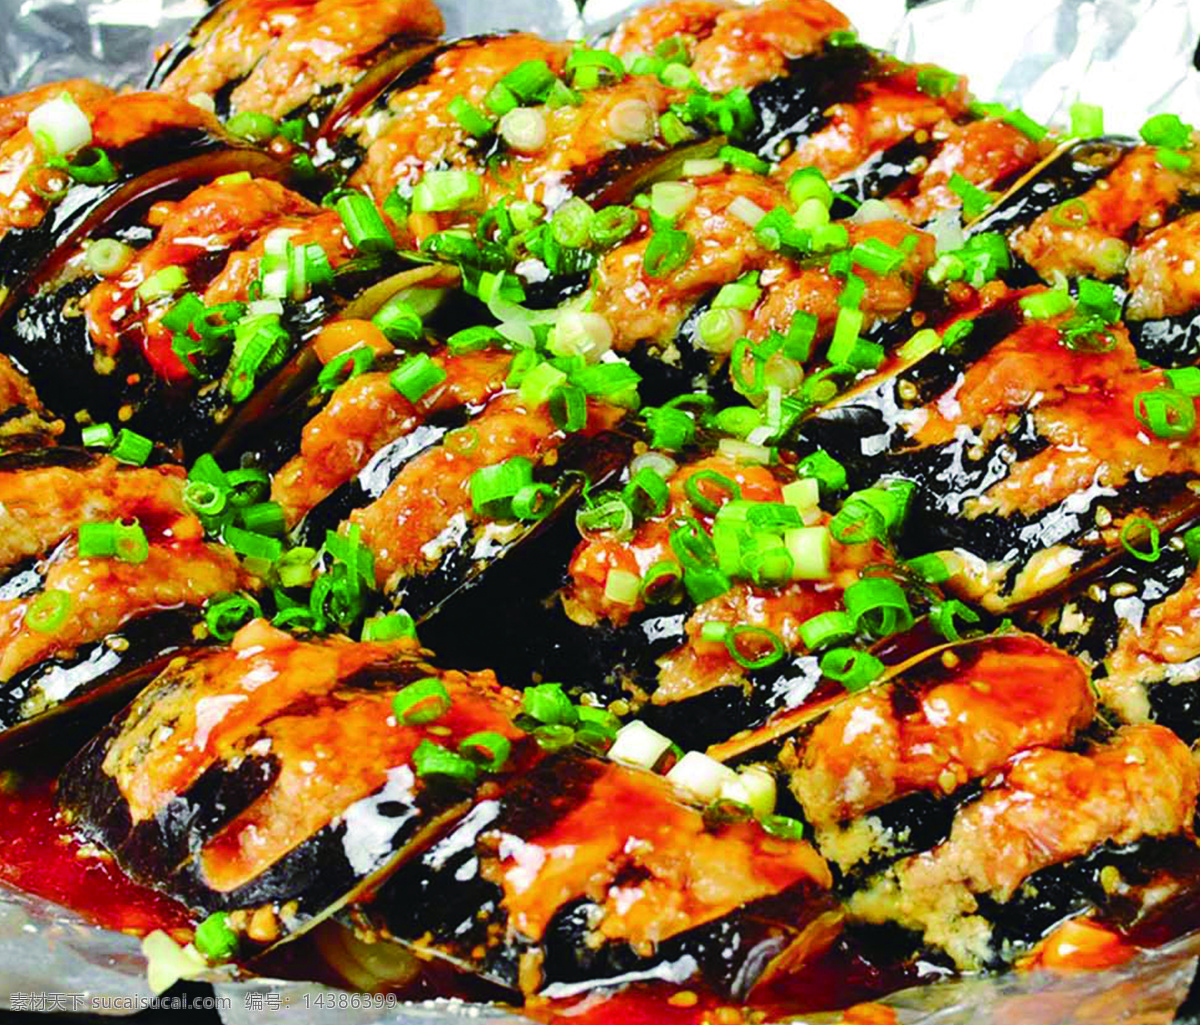 铁板茄子 铁板菜 铁板 茄子 蒜蓉茄子 菜品 餐饮美食 传统美食